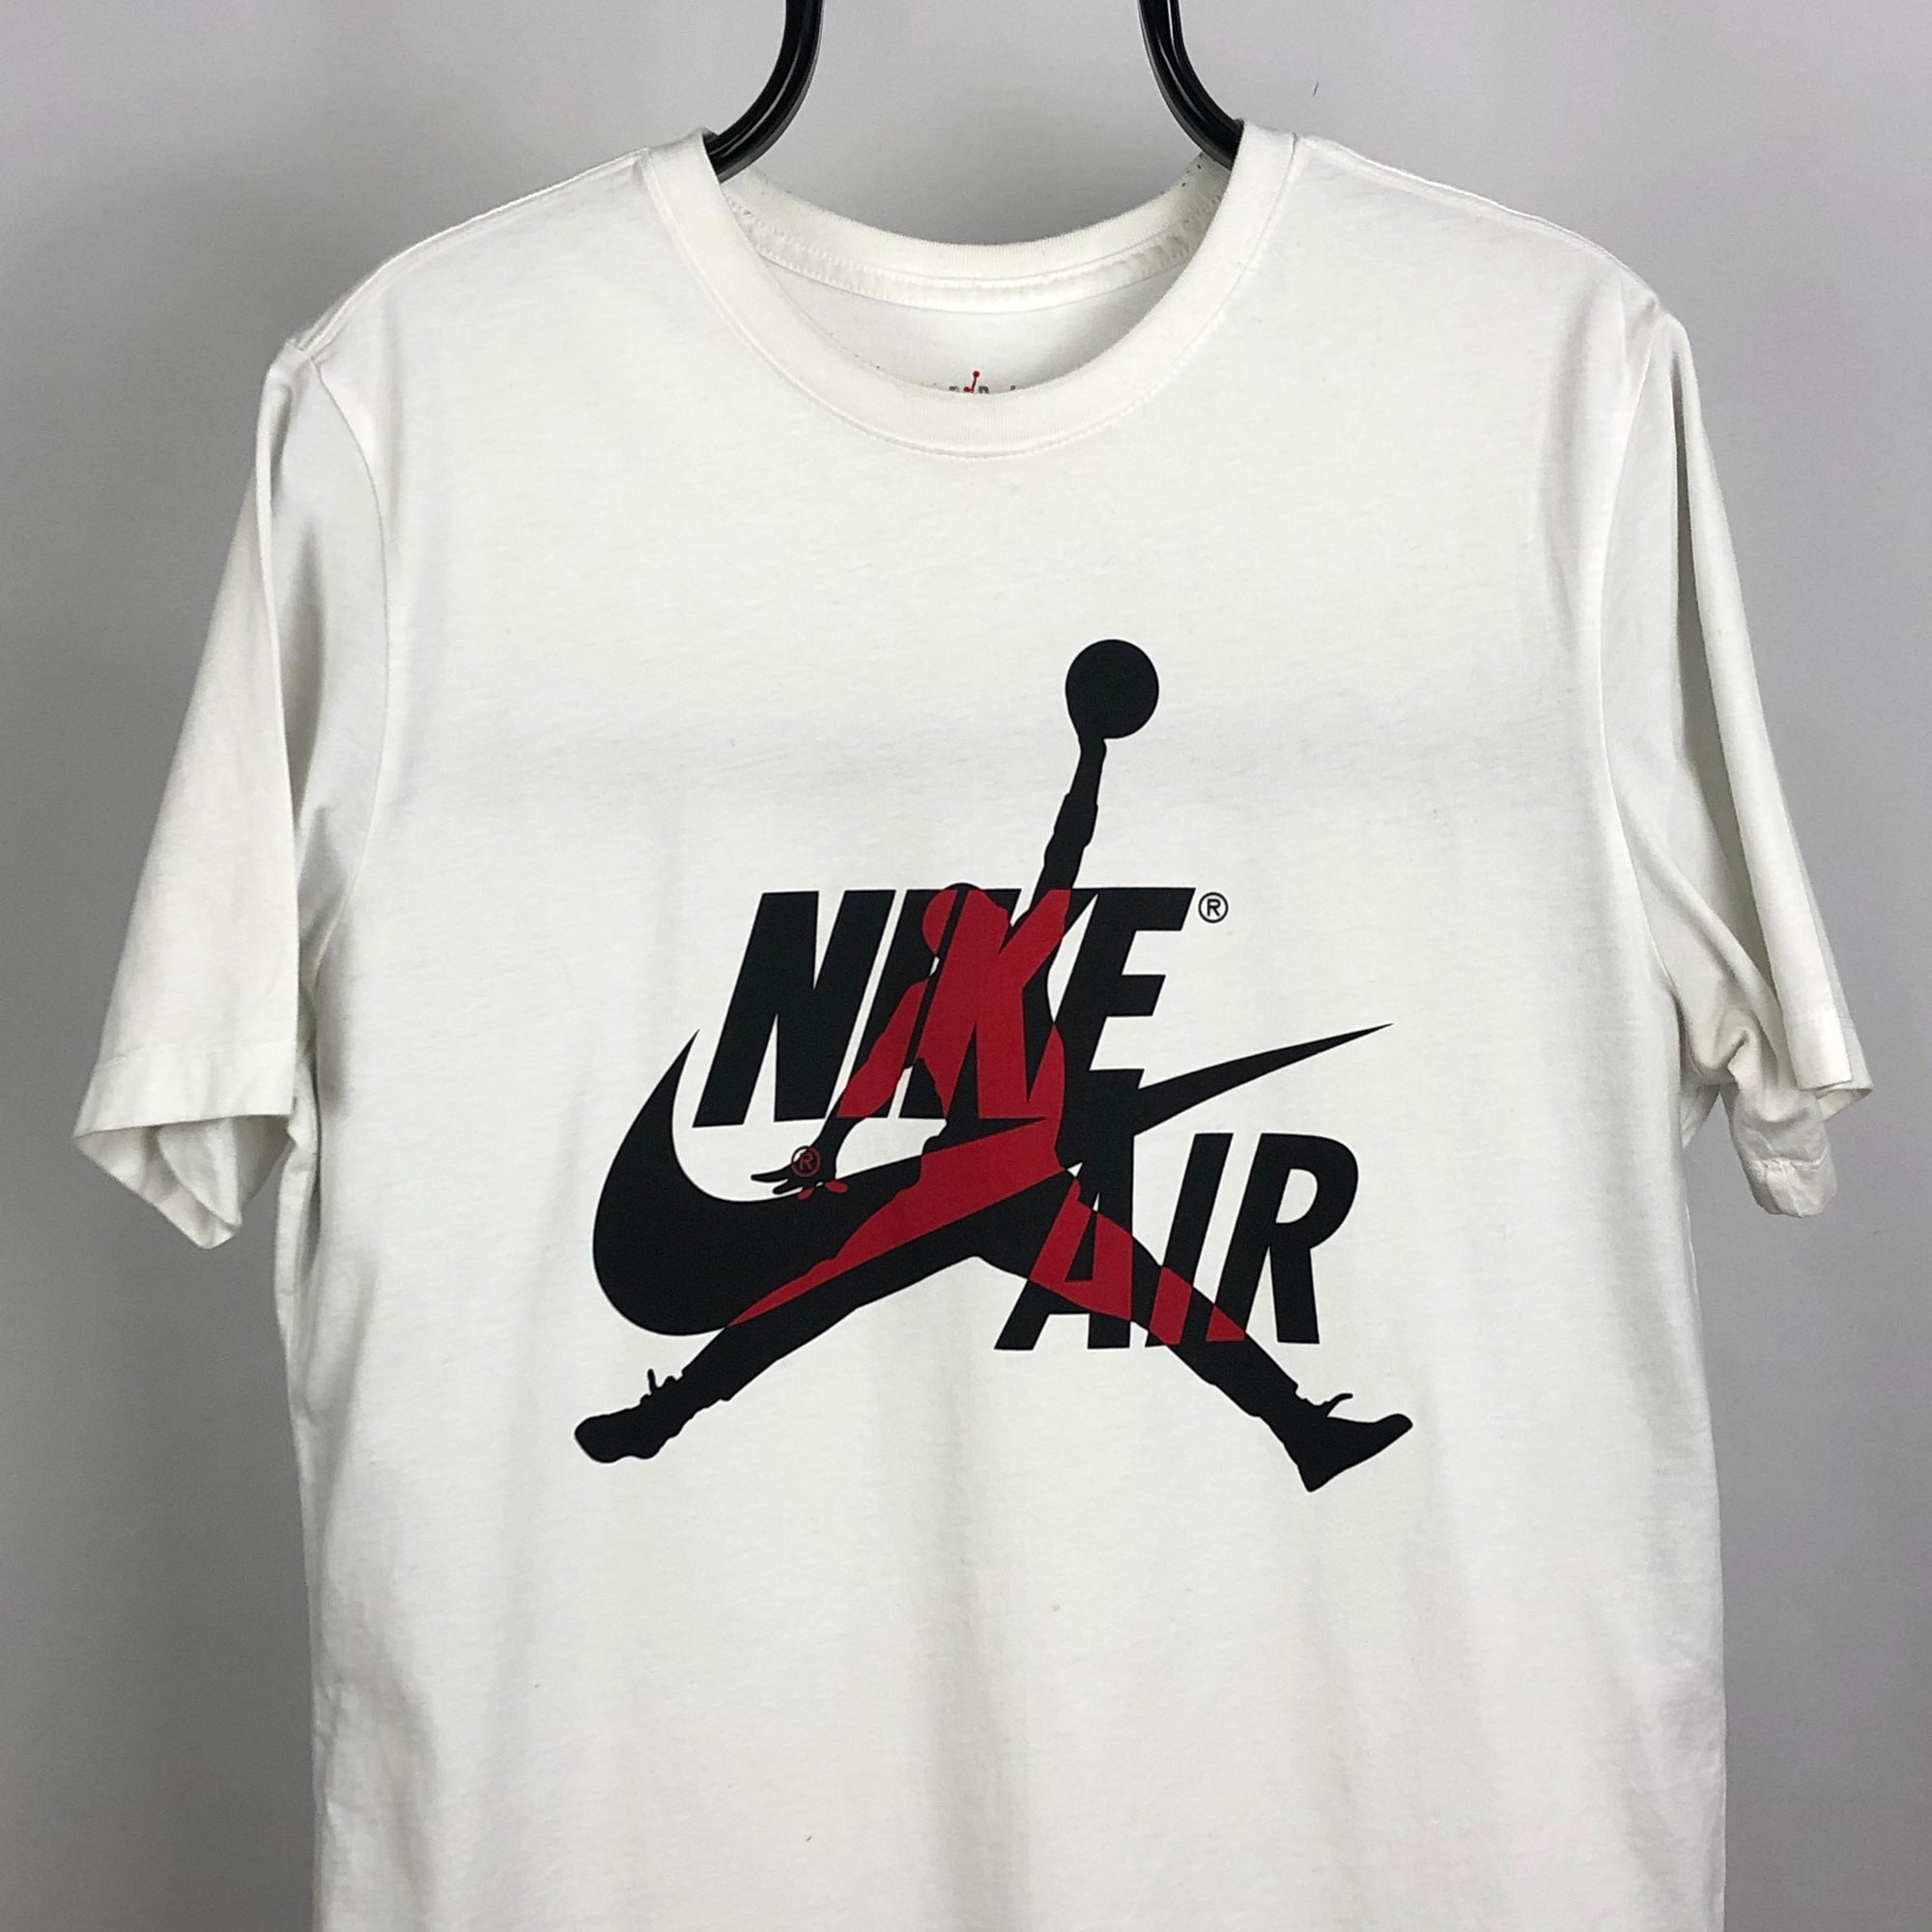 Nike Air Jordan Tee in White - Men's Medium/Women's Large